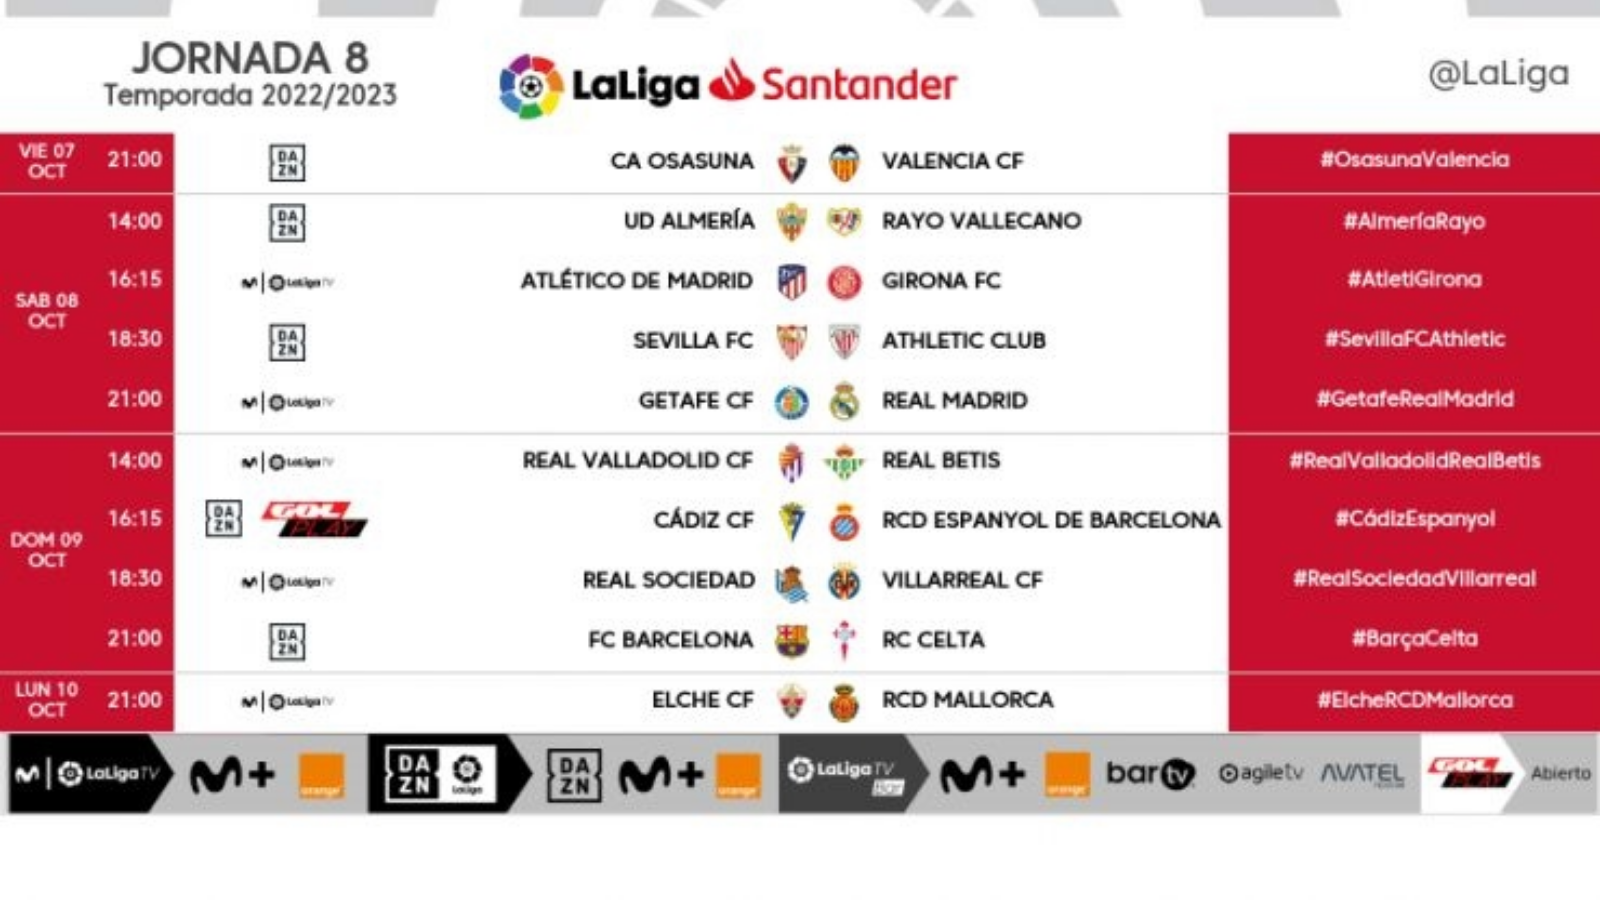 Jornada 8 de Liga 2022-2023: cuándo es, horarios, partidos, clasificación, televisión y resultados | Goal.com Espana